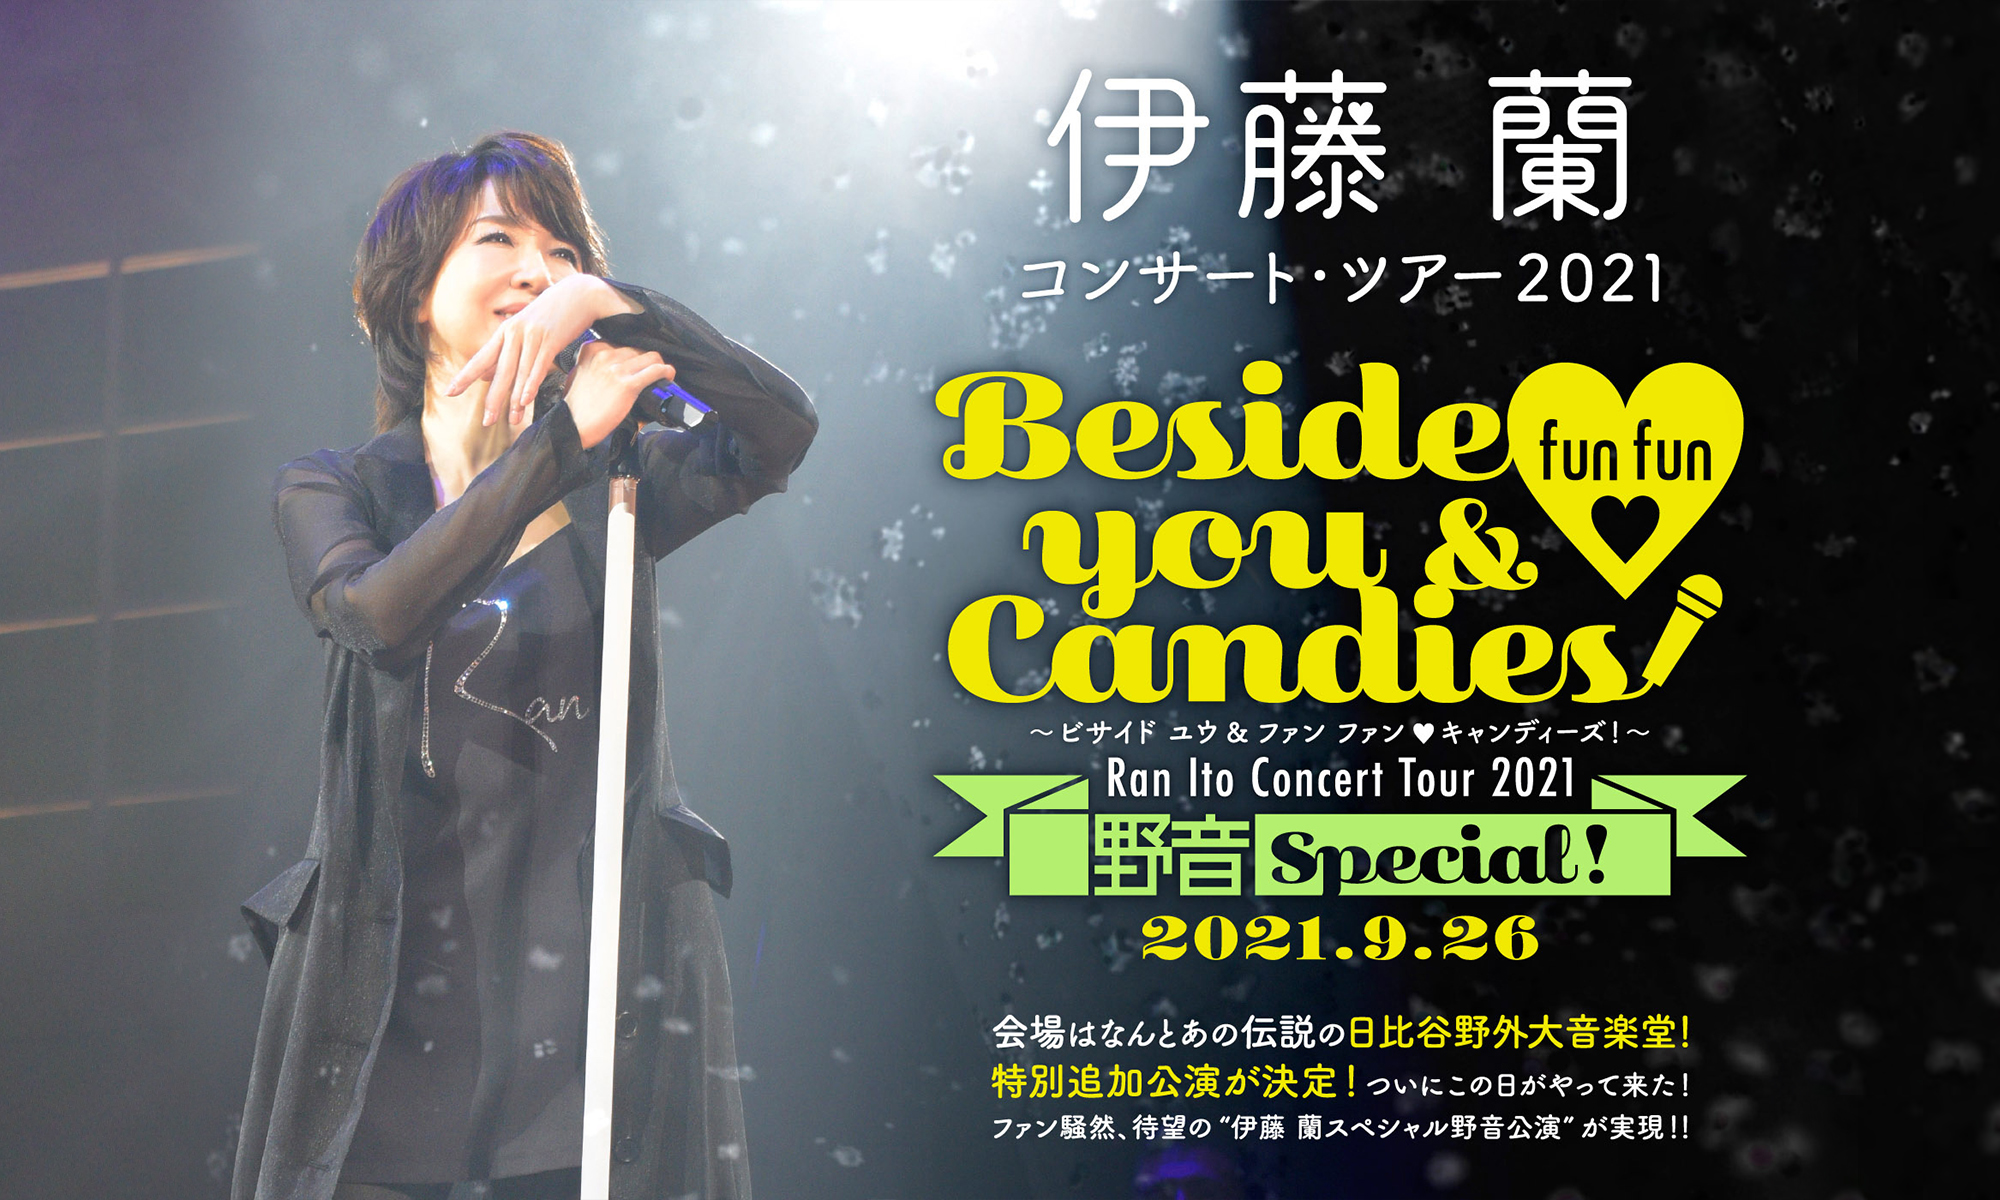 伊藤 蘭コンサート・ツアー2021 特別追加公演～Beside you & fun fun ♡ Candies！野音SPECIAL！～